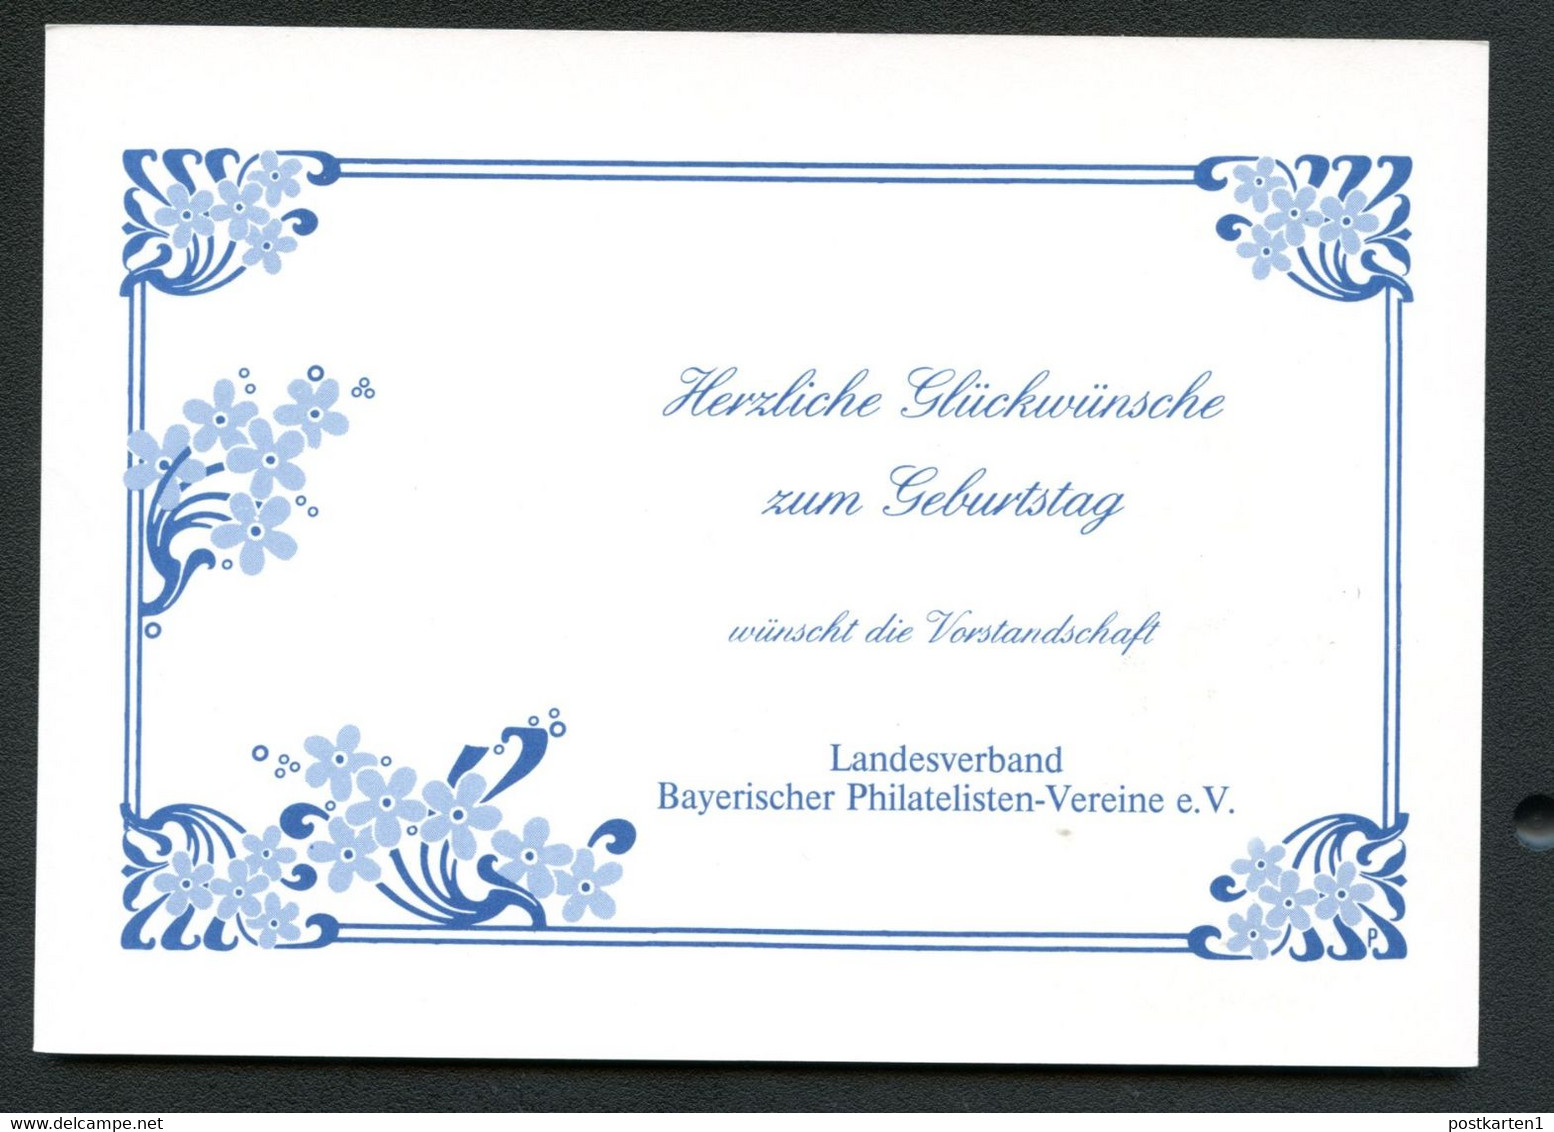 Bund PP106 D2/037-II BAYRISCHER POSTILLION 1840 Rs. Zudruck Ingolstadt 1984 - Privatpostkarten - Ungebraucht